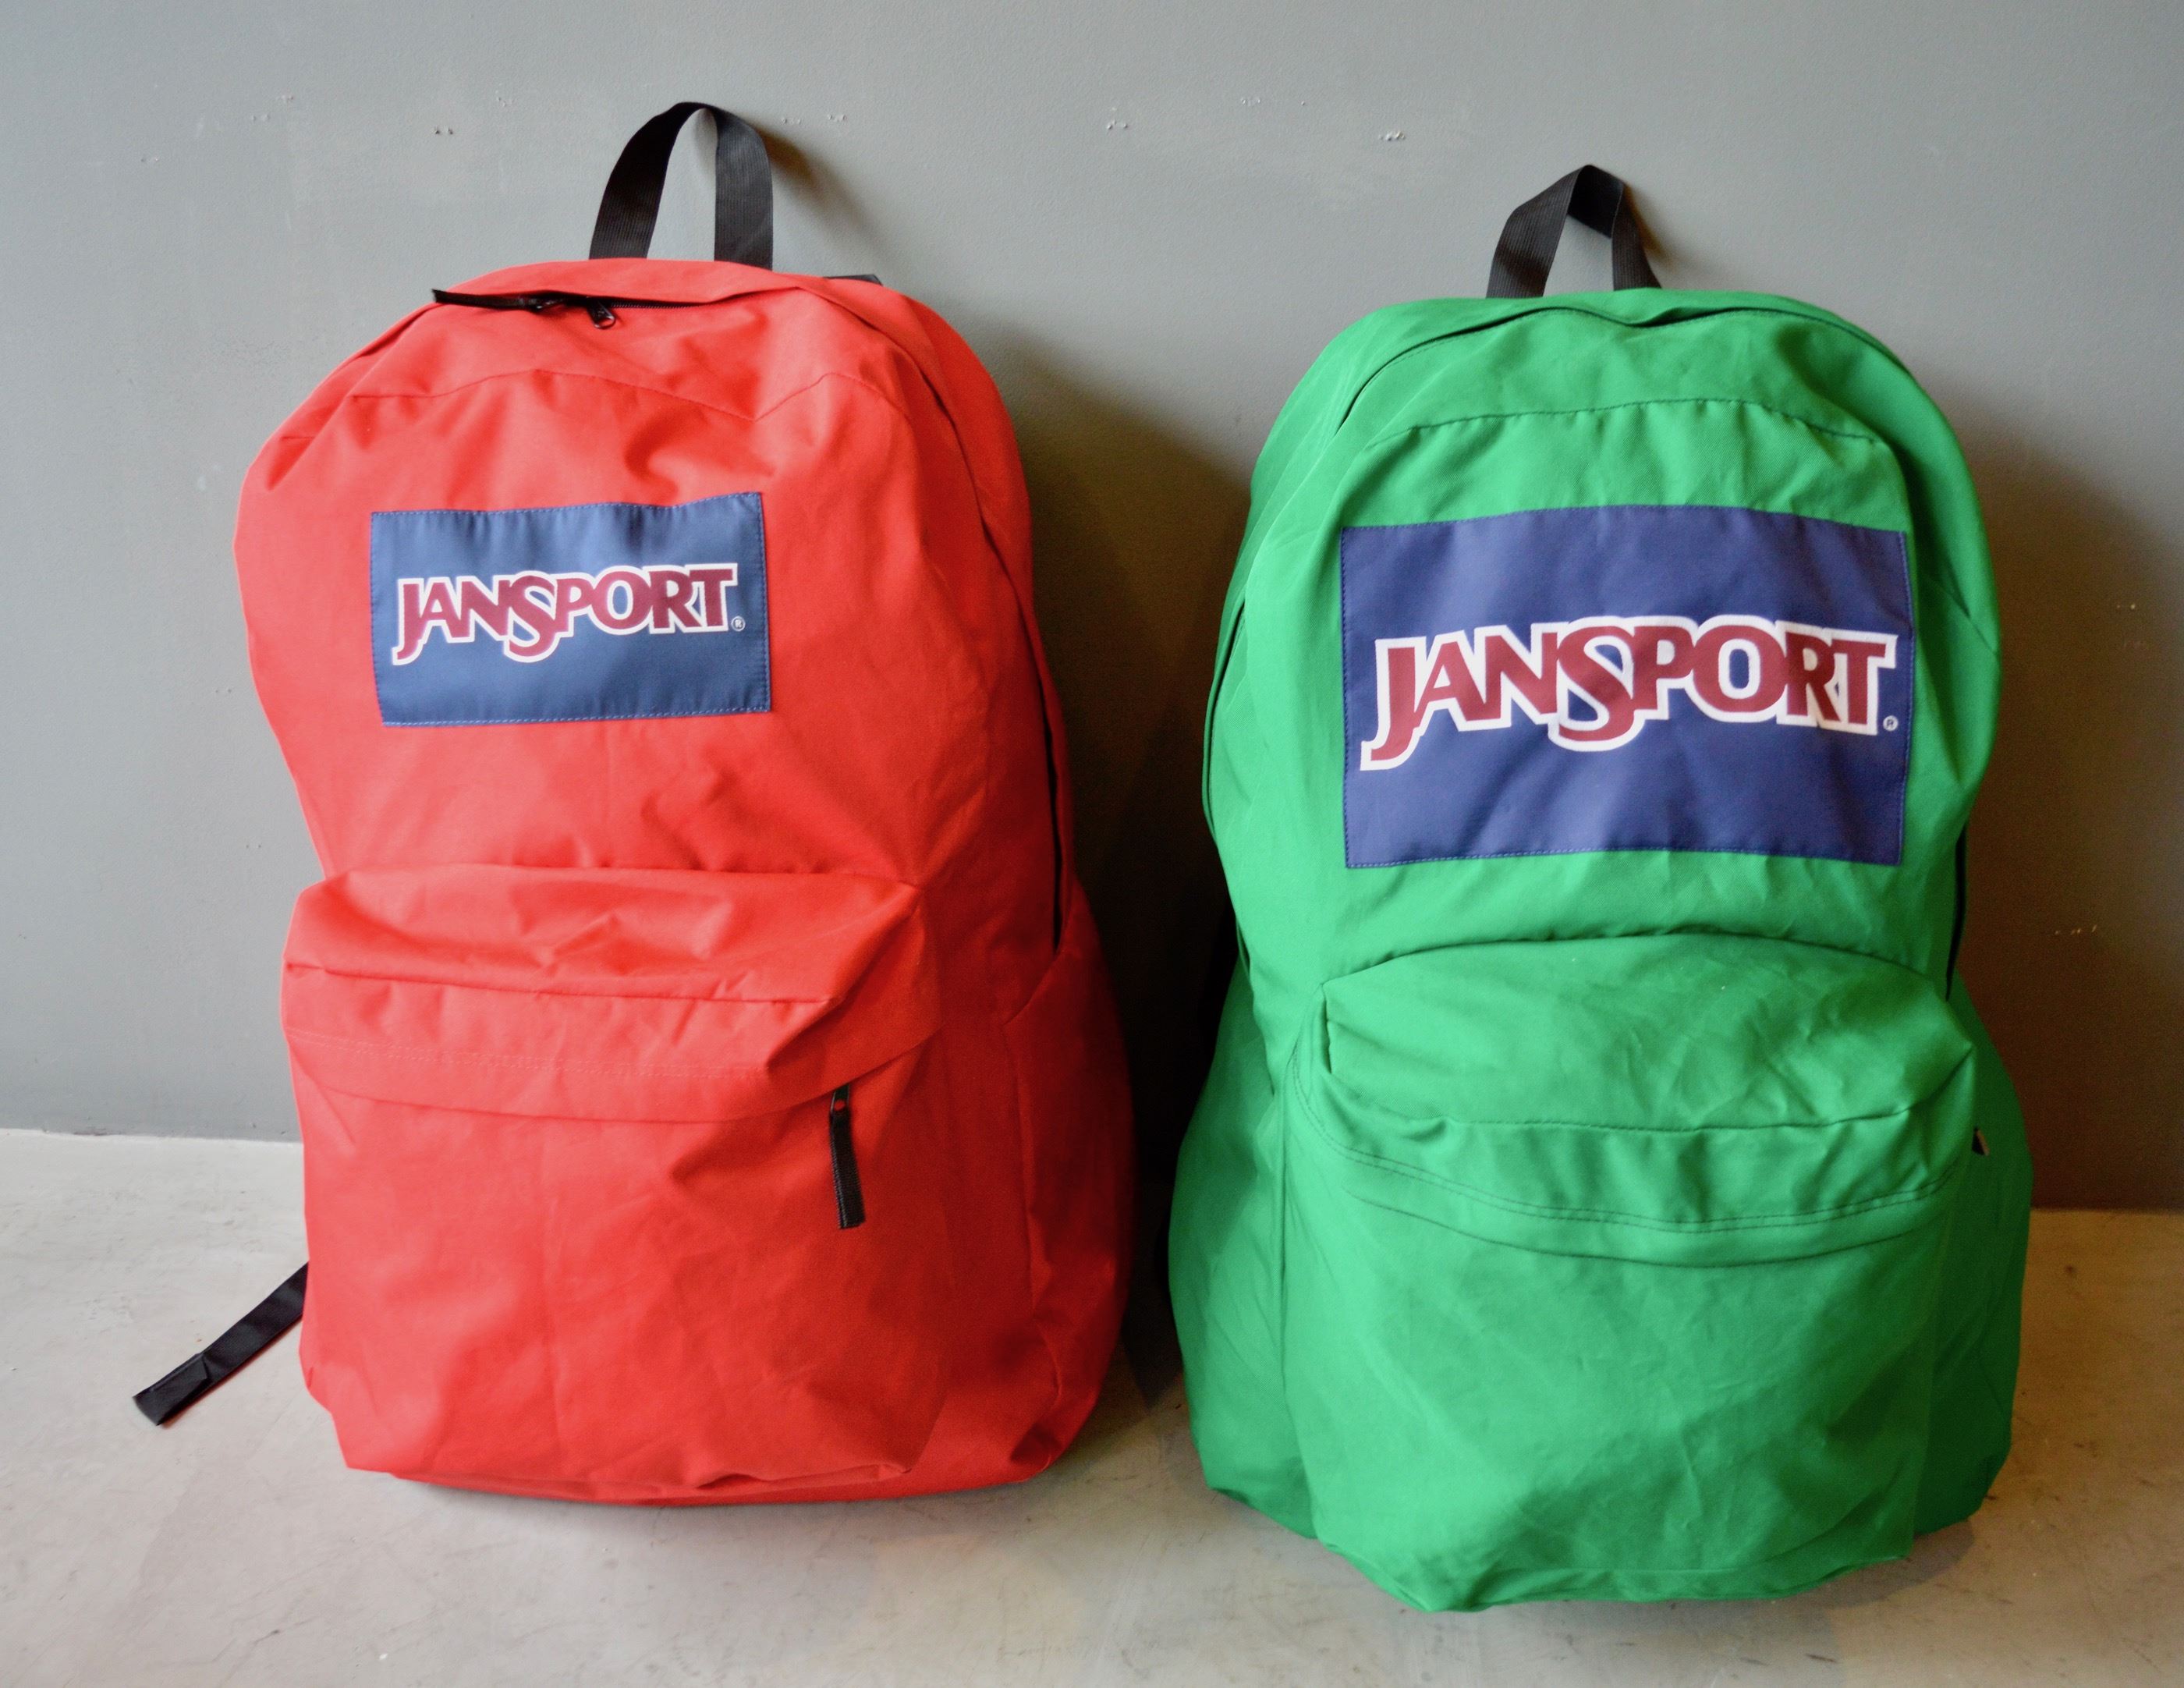 Massive Oversized JANSPORT Backpacks